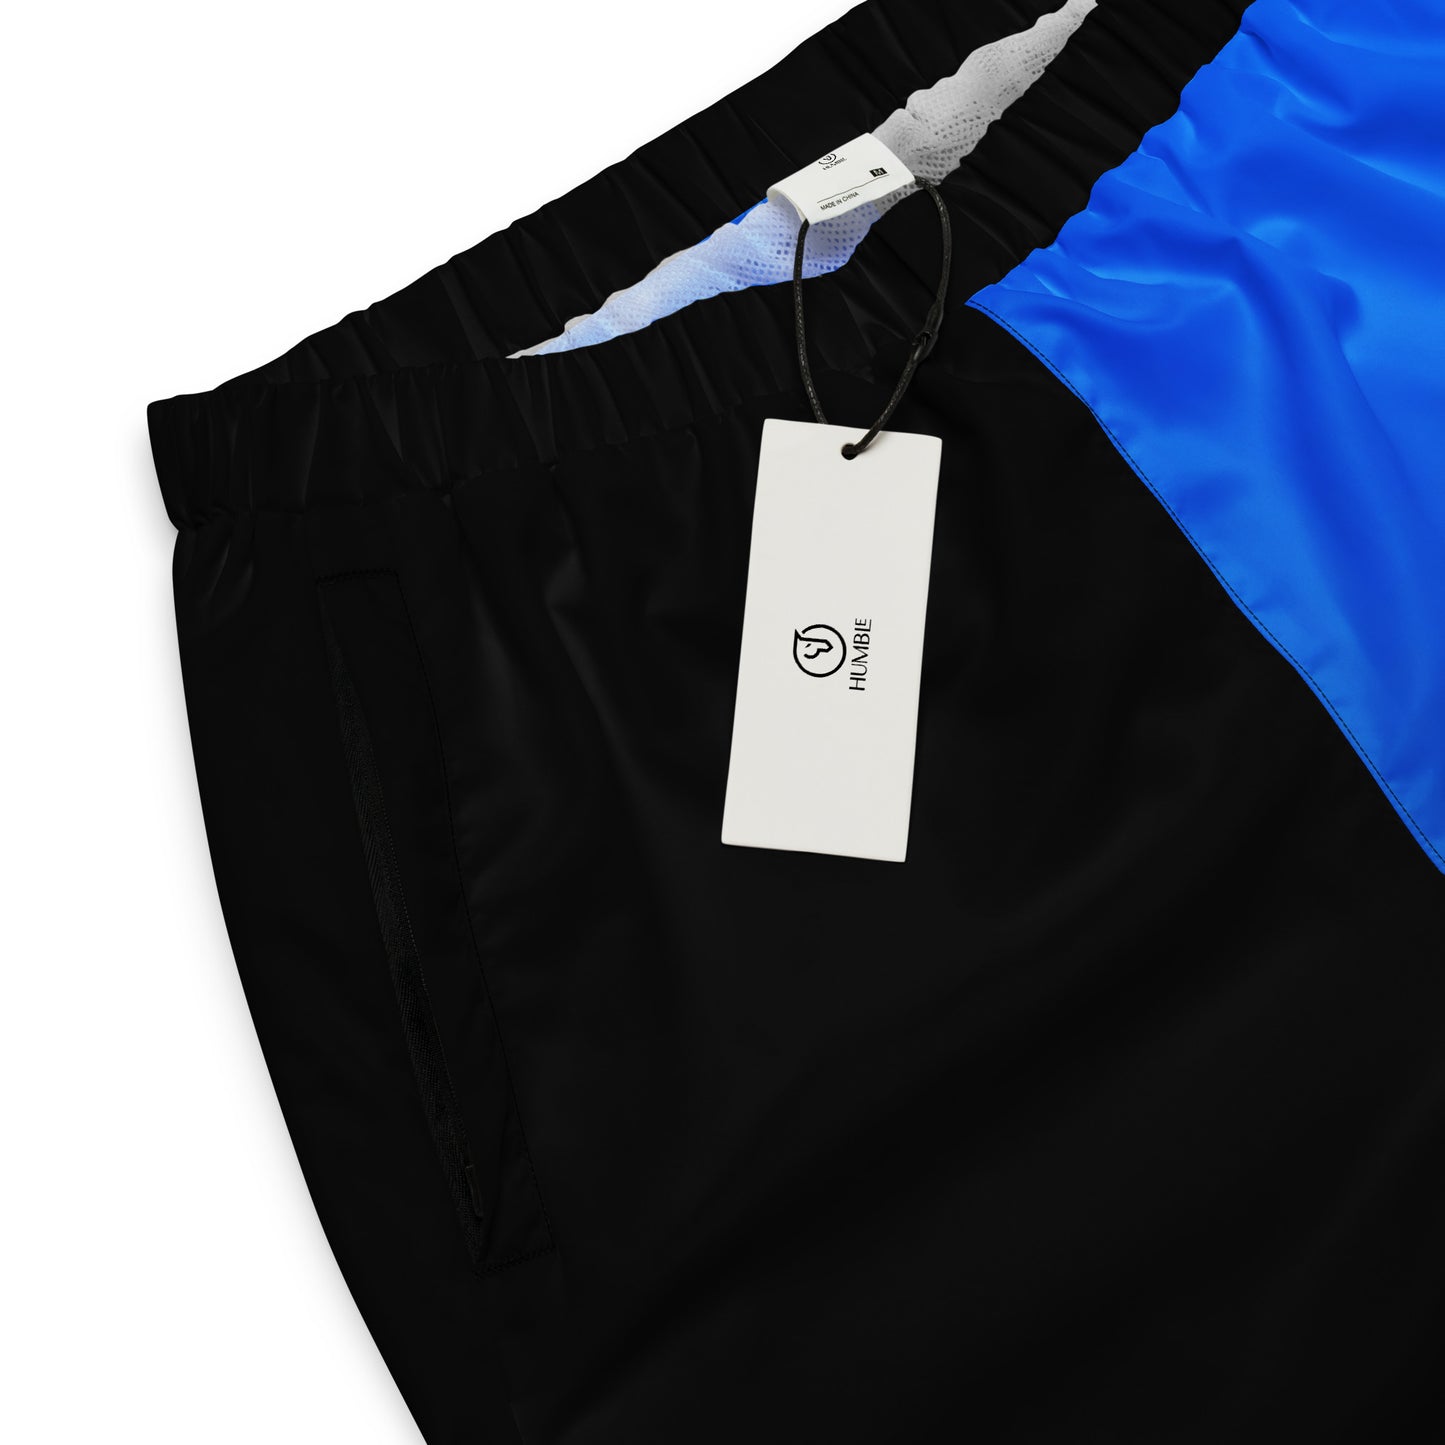 Humble Sportswear™ Women's Fire Blue Track Pants - Mireille Fine Art